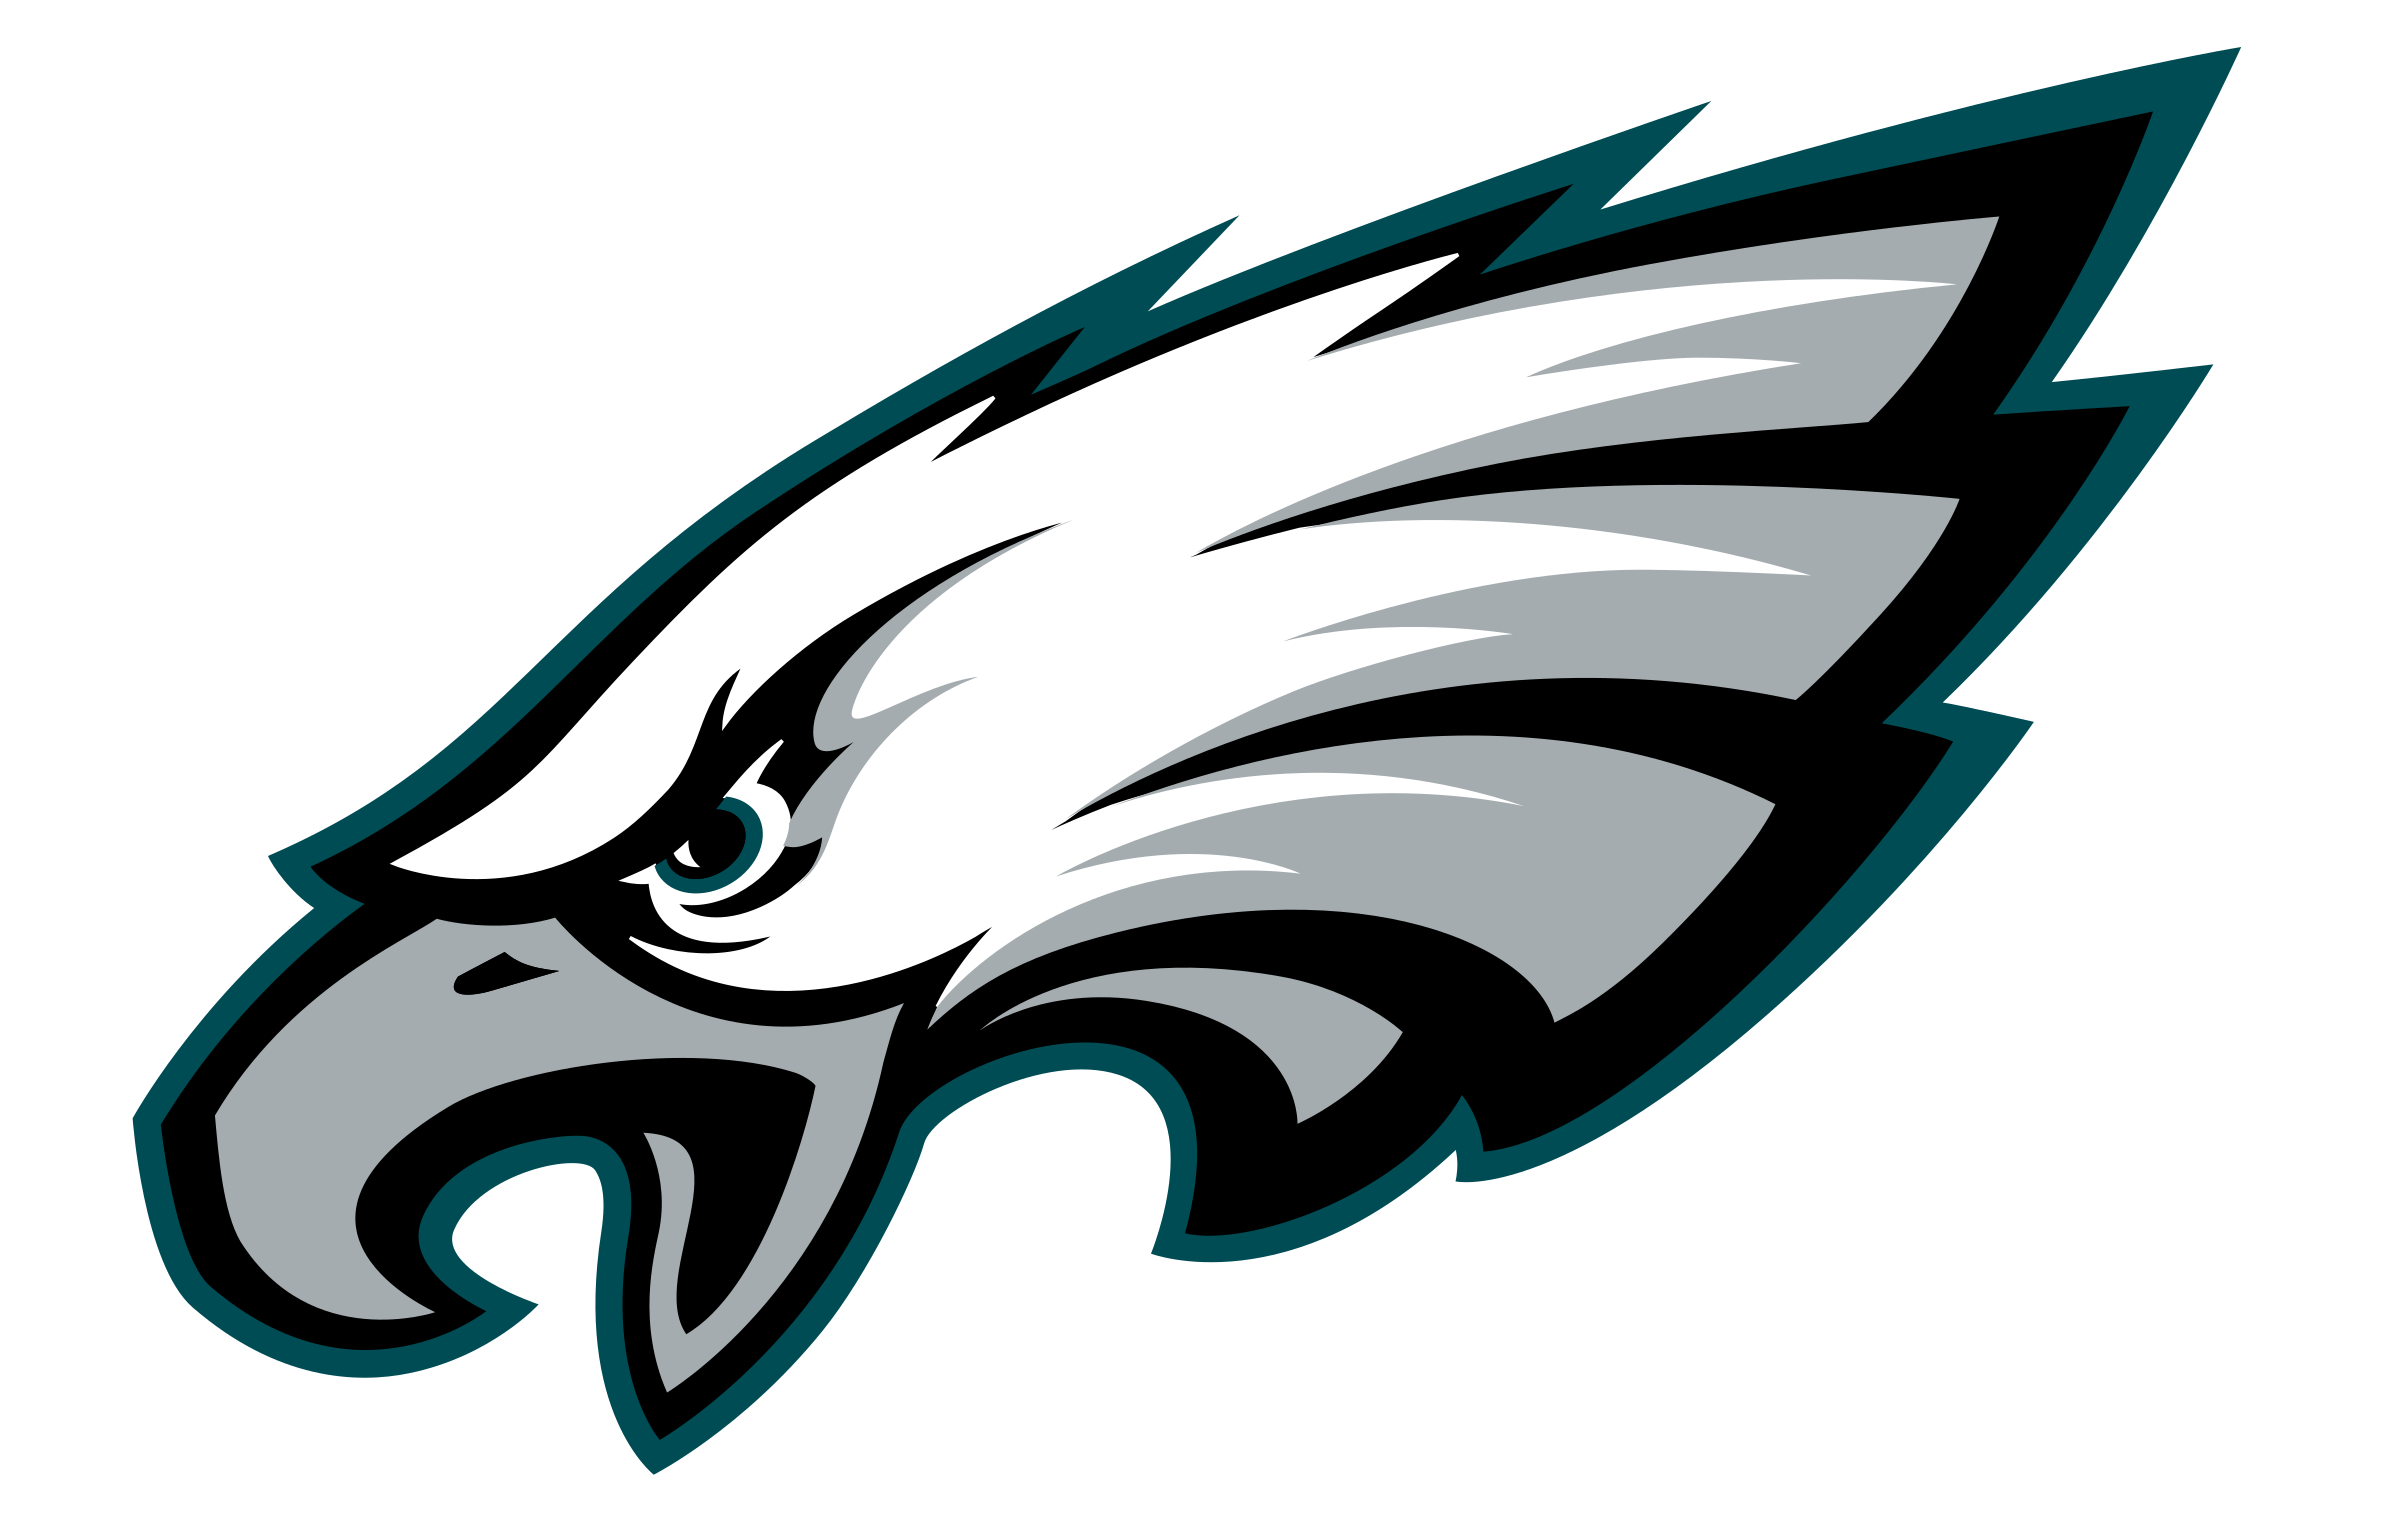 Philadelphia Eagles Logo Png Transparent & Svg Vector - Pluspng Pluspng, Philadelphia Eagles Logo PNG - Free PNG